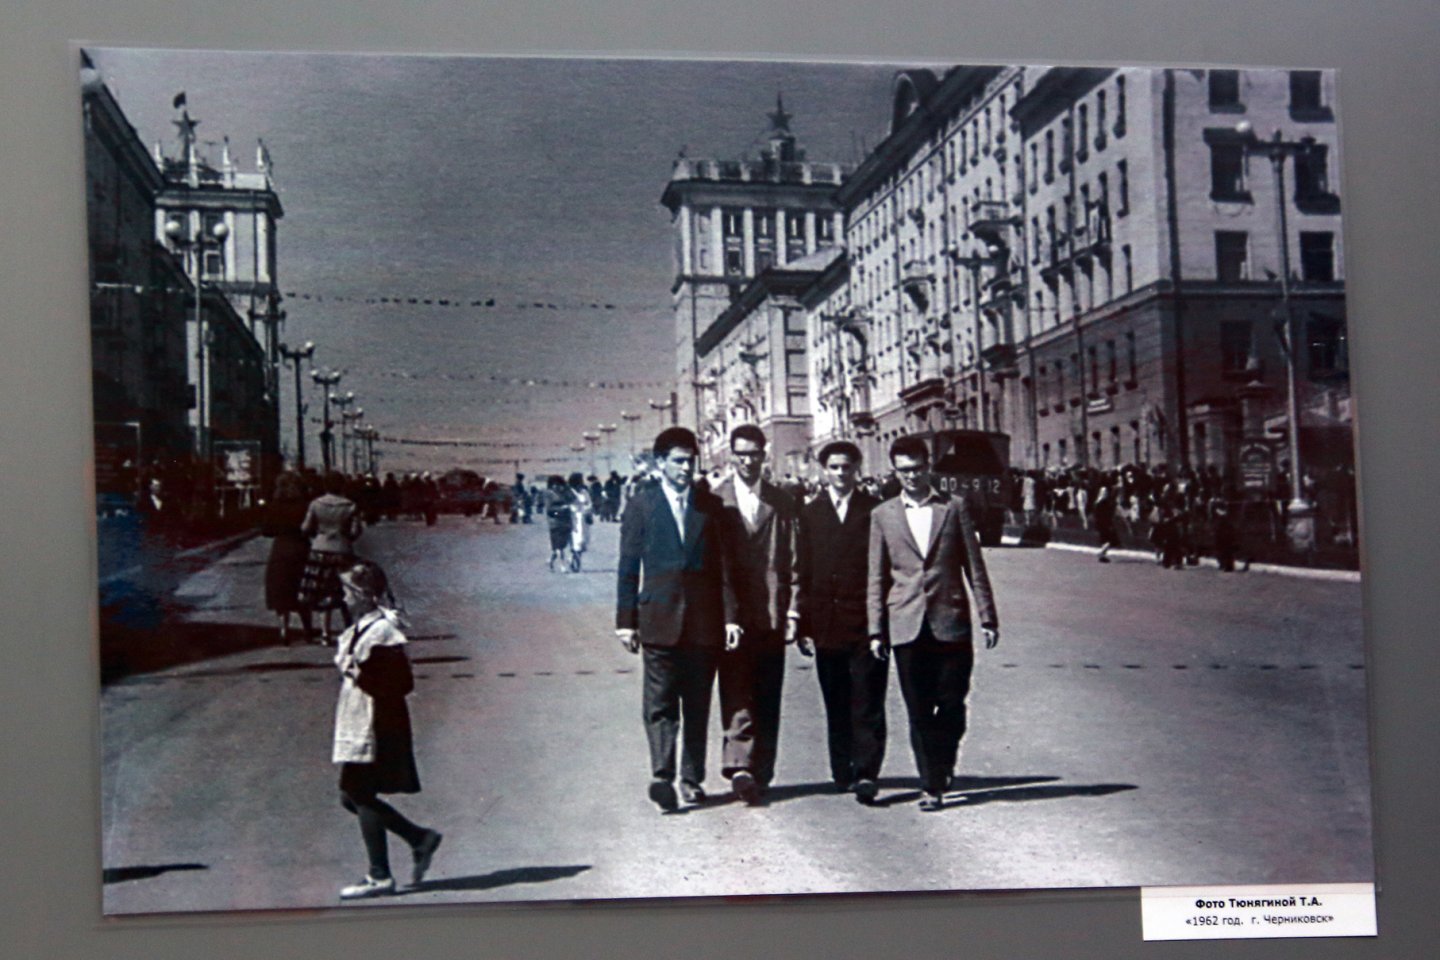 «Советское фото: из века прошлого в день настоящий» - выставка ретро-фотографии в Центральной городской библиотеке